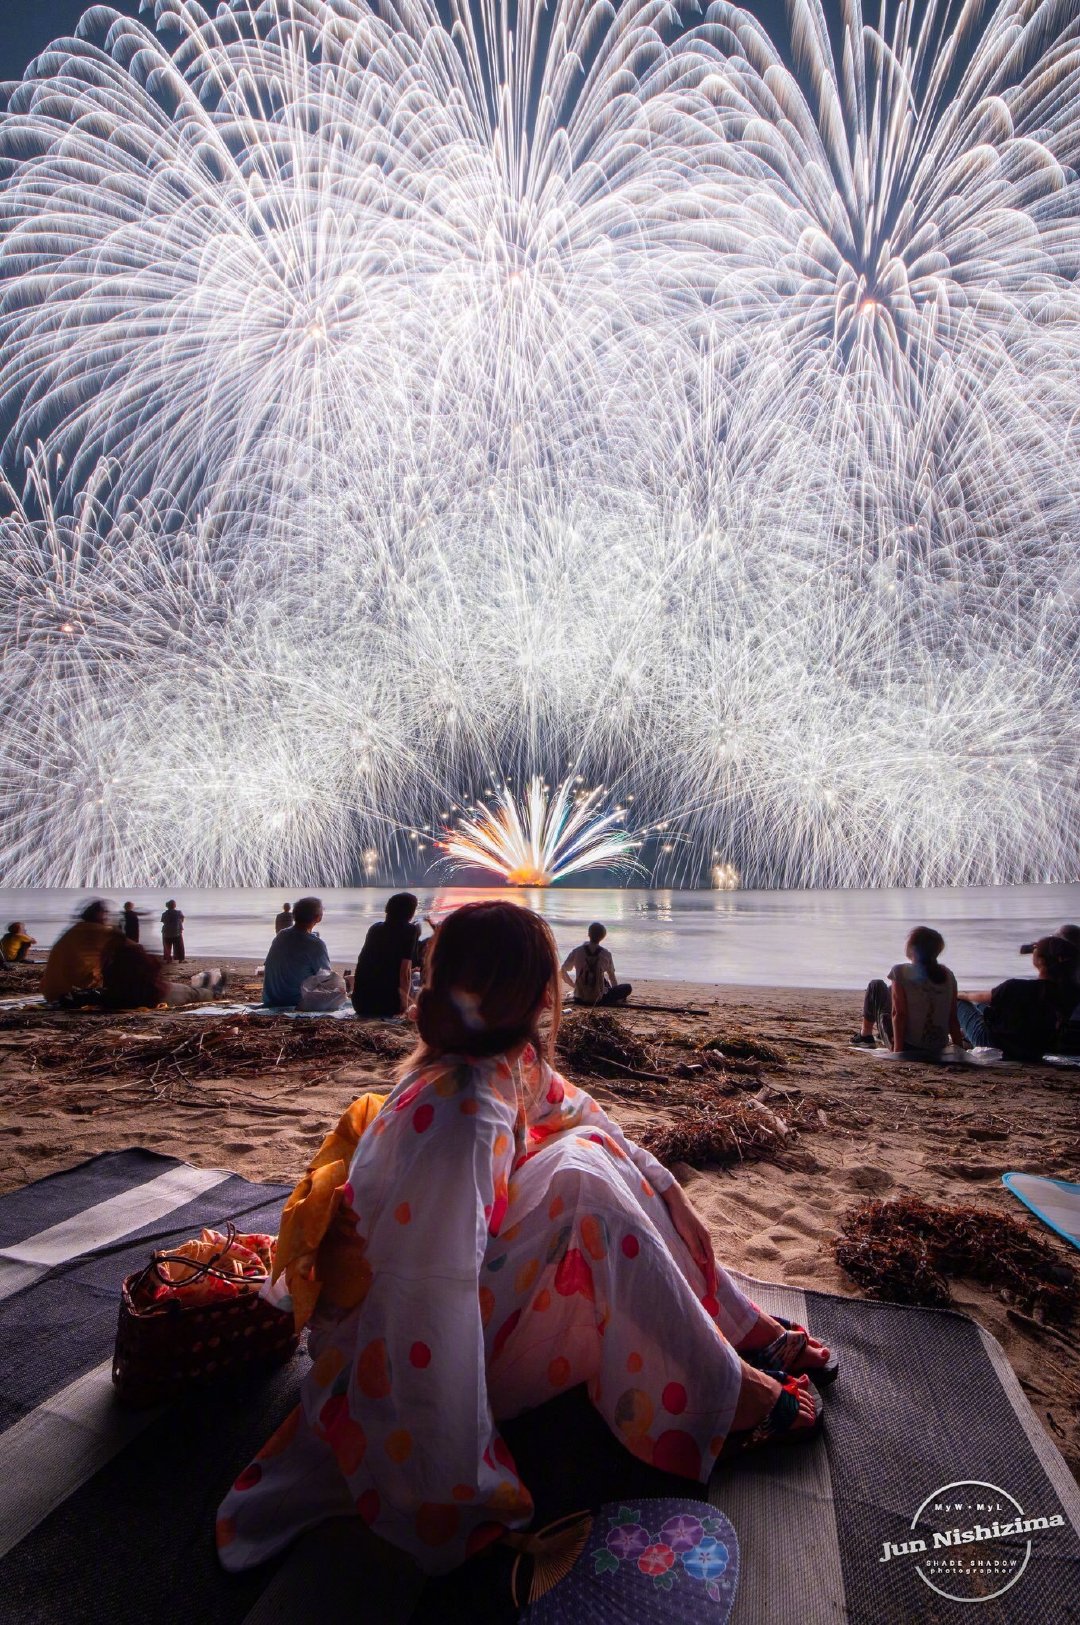 日本三重县的花火大会 这个夏天一定不能错过